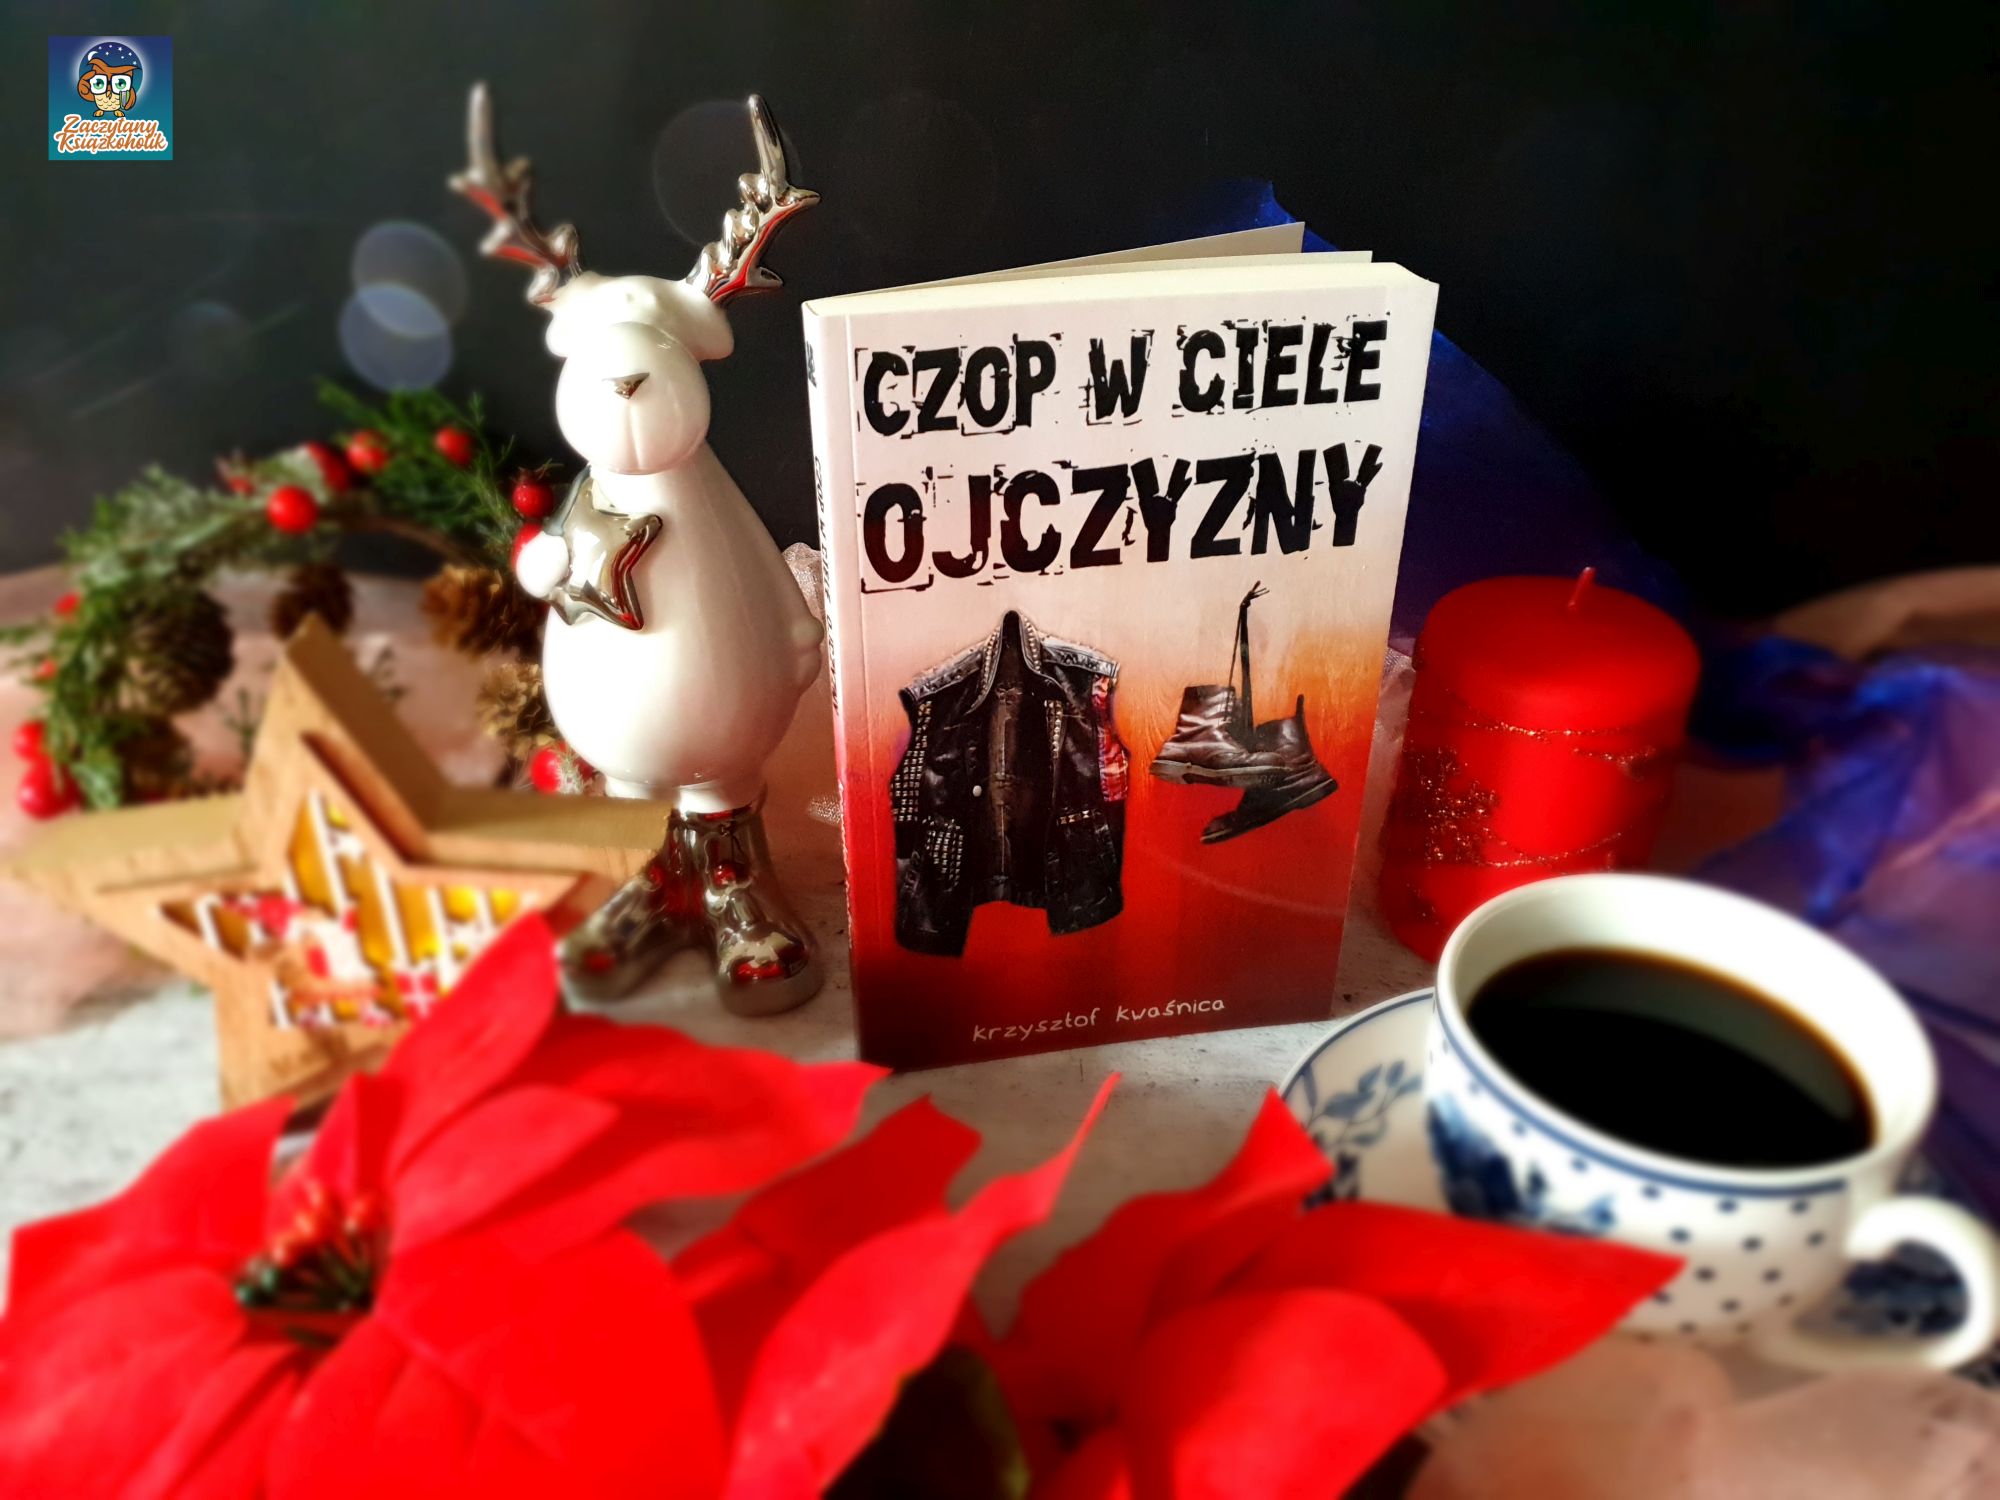 czop w ciele ojczyzny, Krzysztof Kwaśnica, zaczytanyksiazkoholik.pl